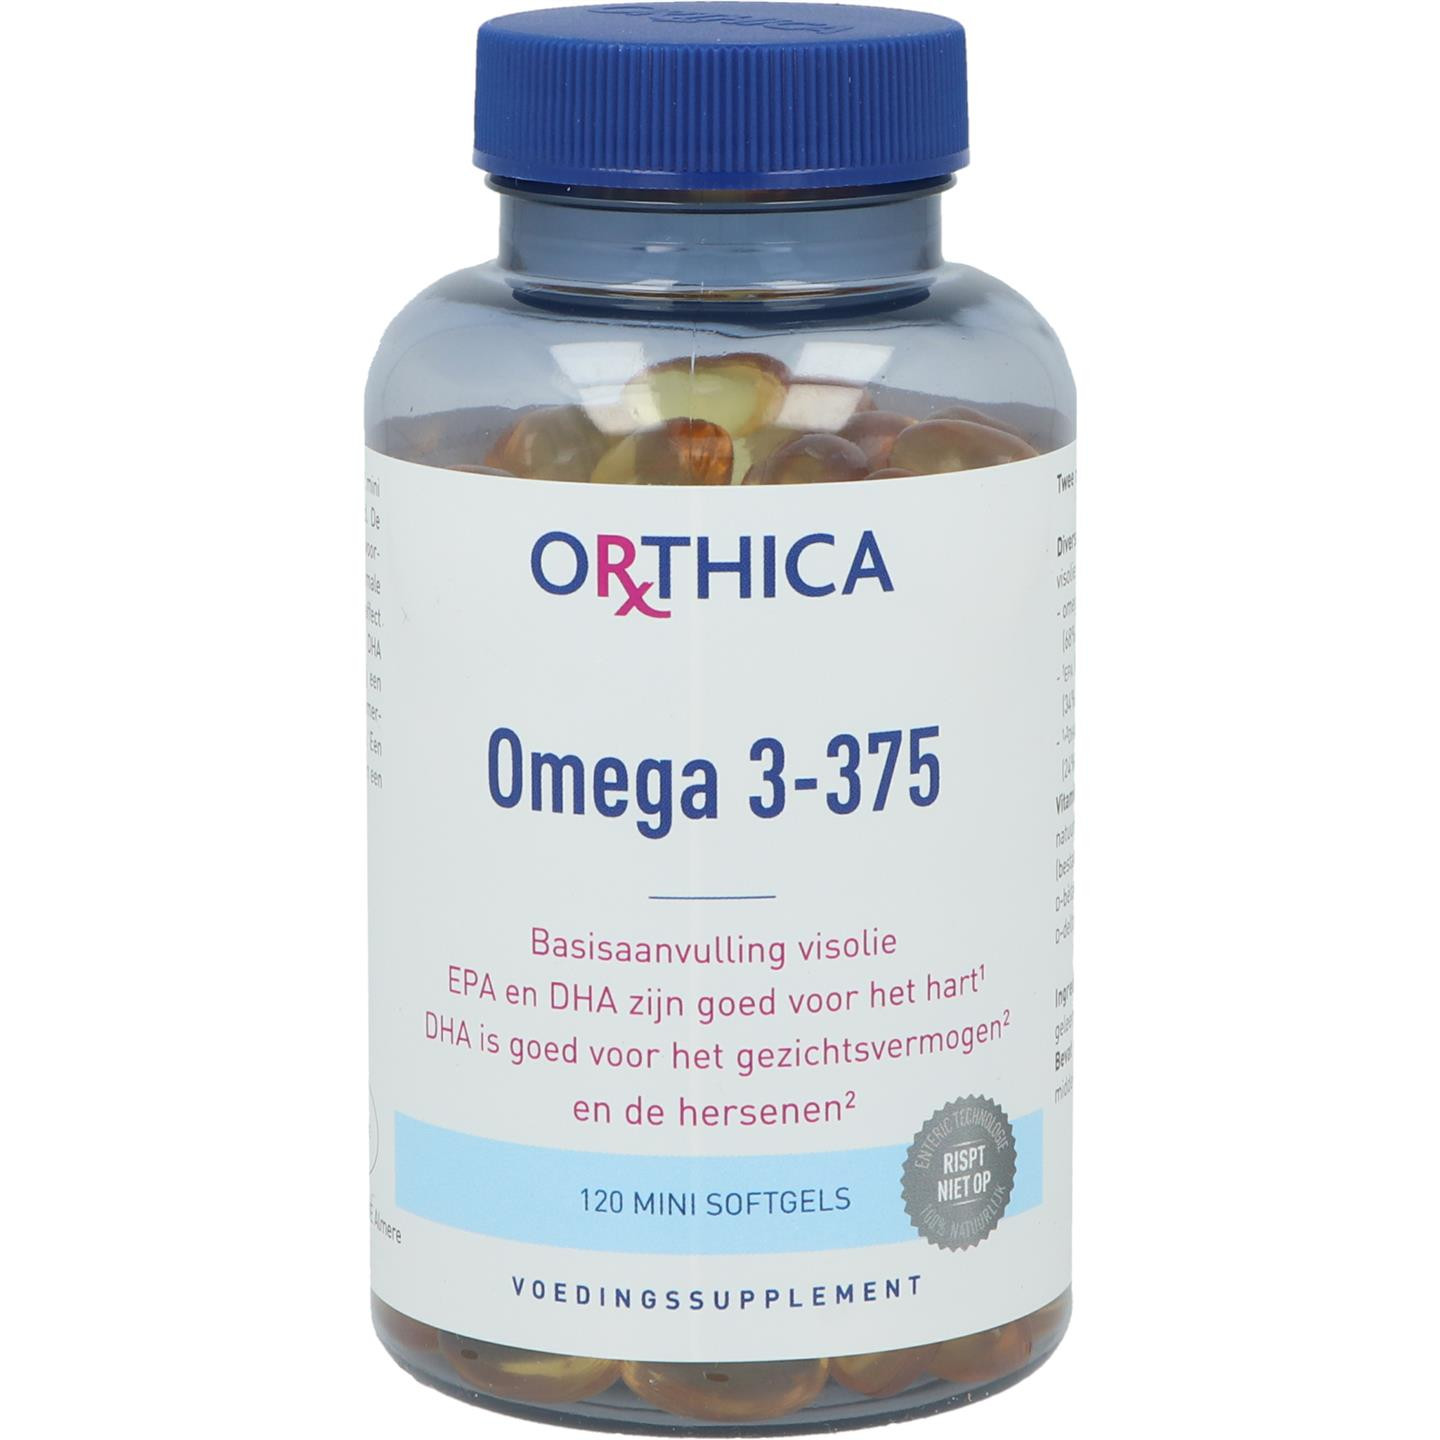 Omega 3-375